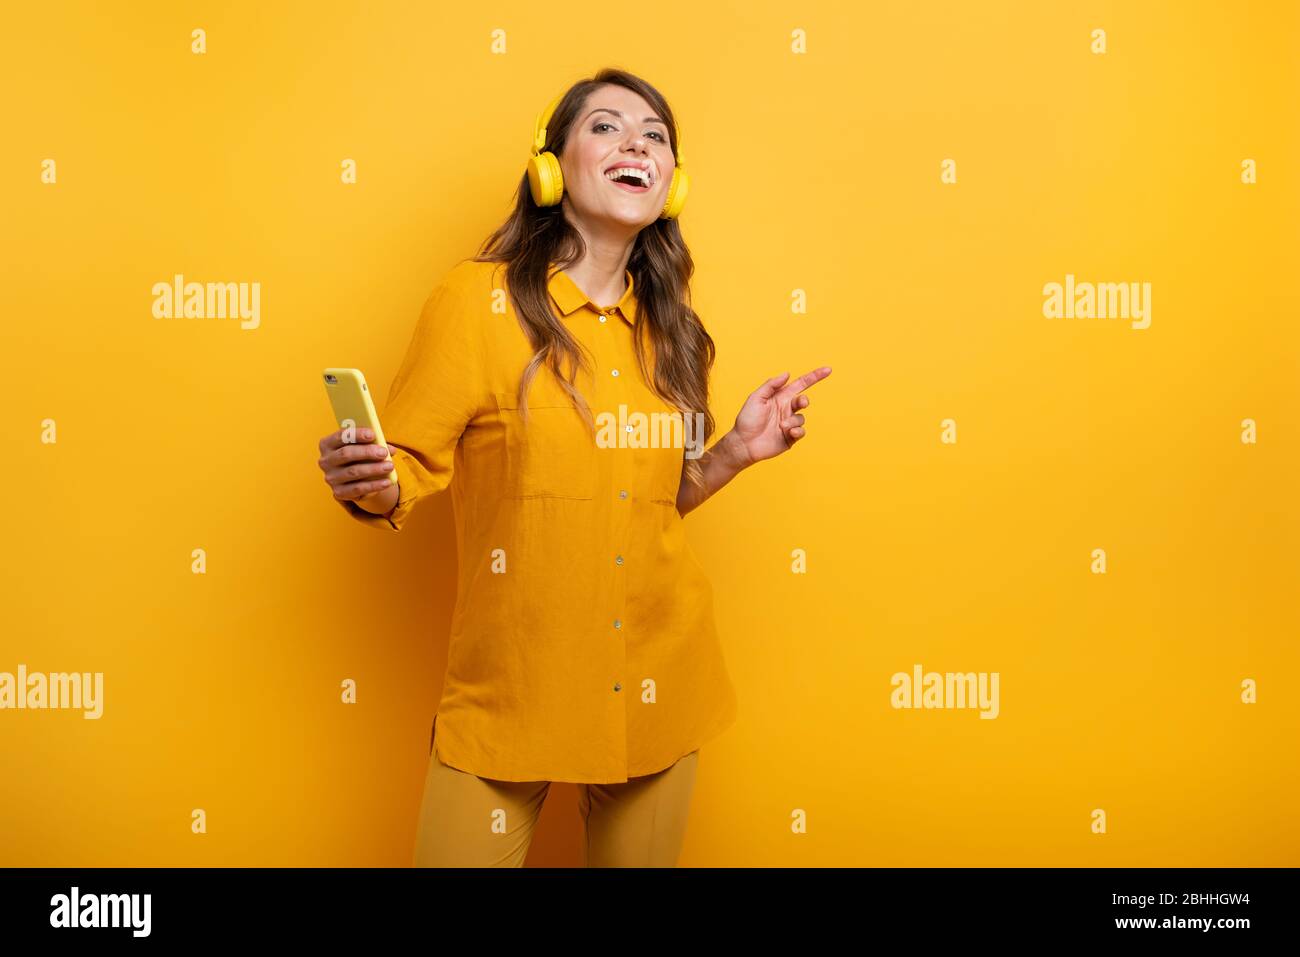 Mädchen mit gelben Headset hört Musik und Tänze. emotionalen und energetischen Ausdruck Stockfoto